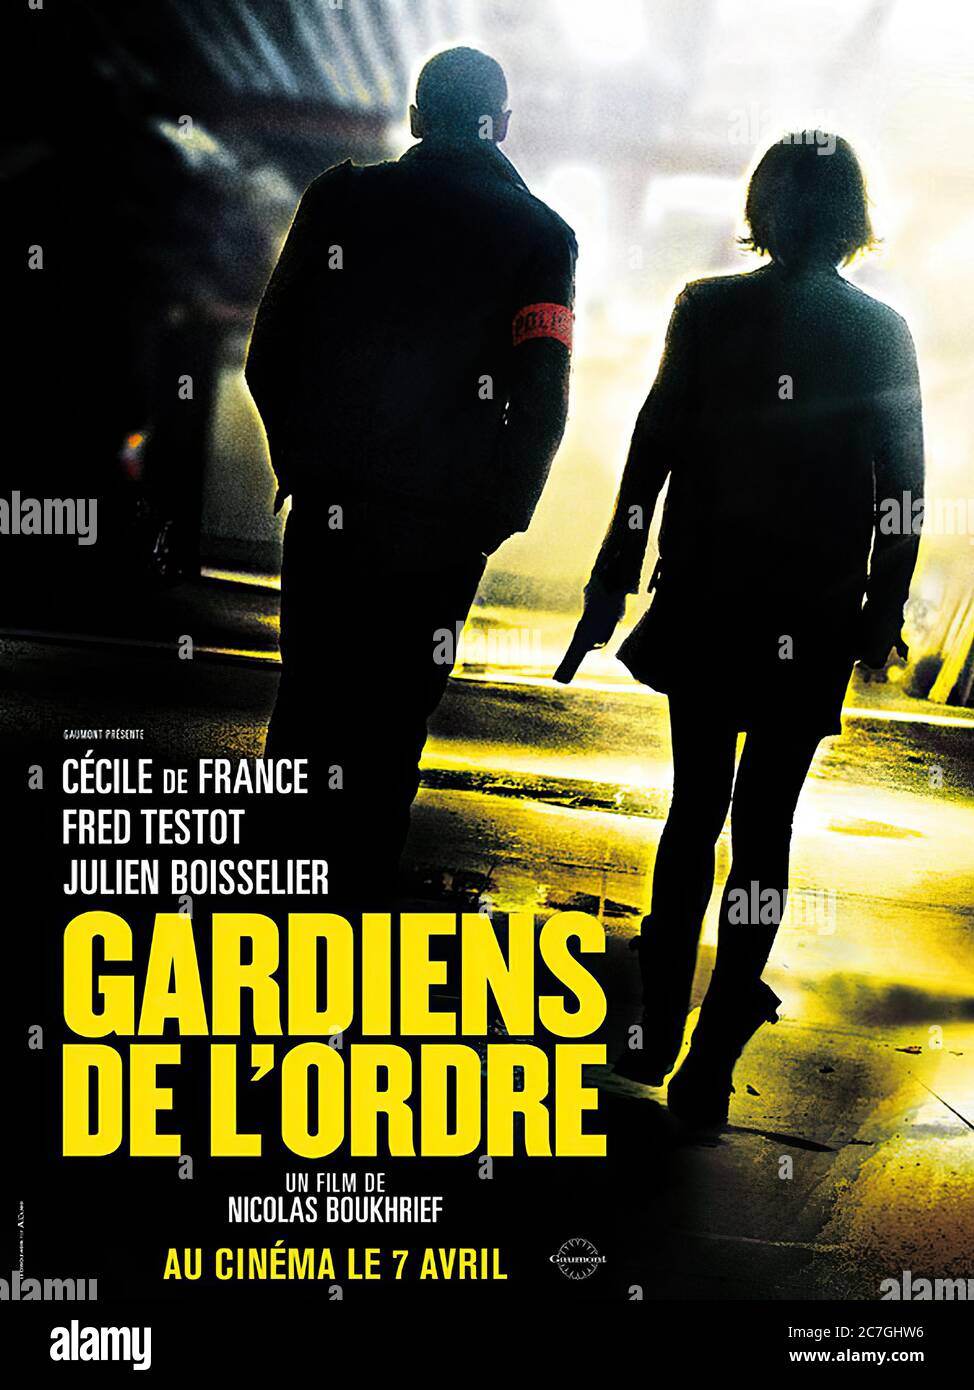 Gardiens De L'ordre - Movie Poster Stock Photo